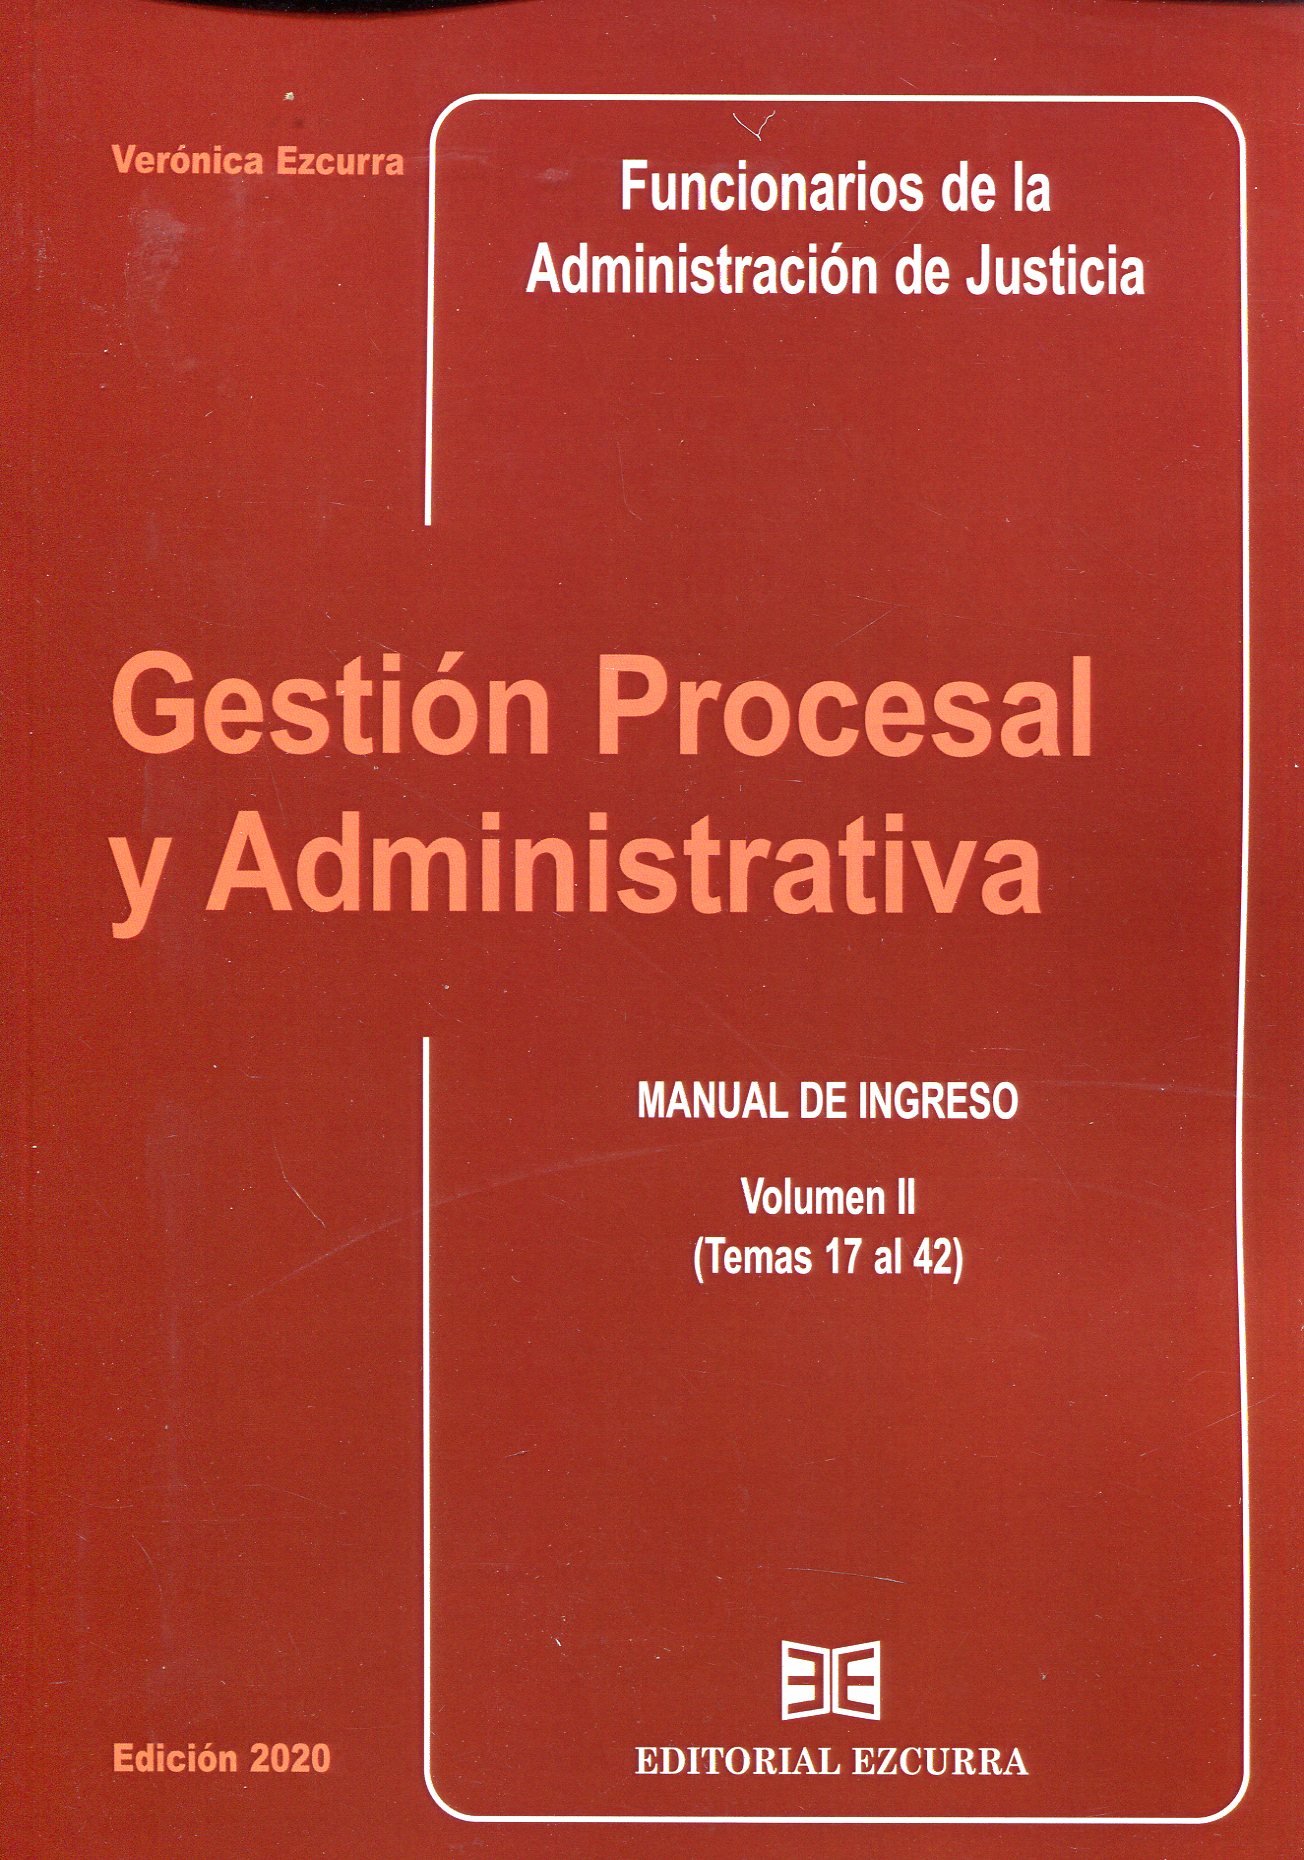 Gestión procesal y administrativa para los Funcionarios de la Administración de Justicia. 9788416190607